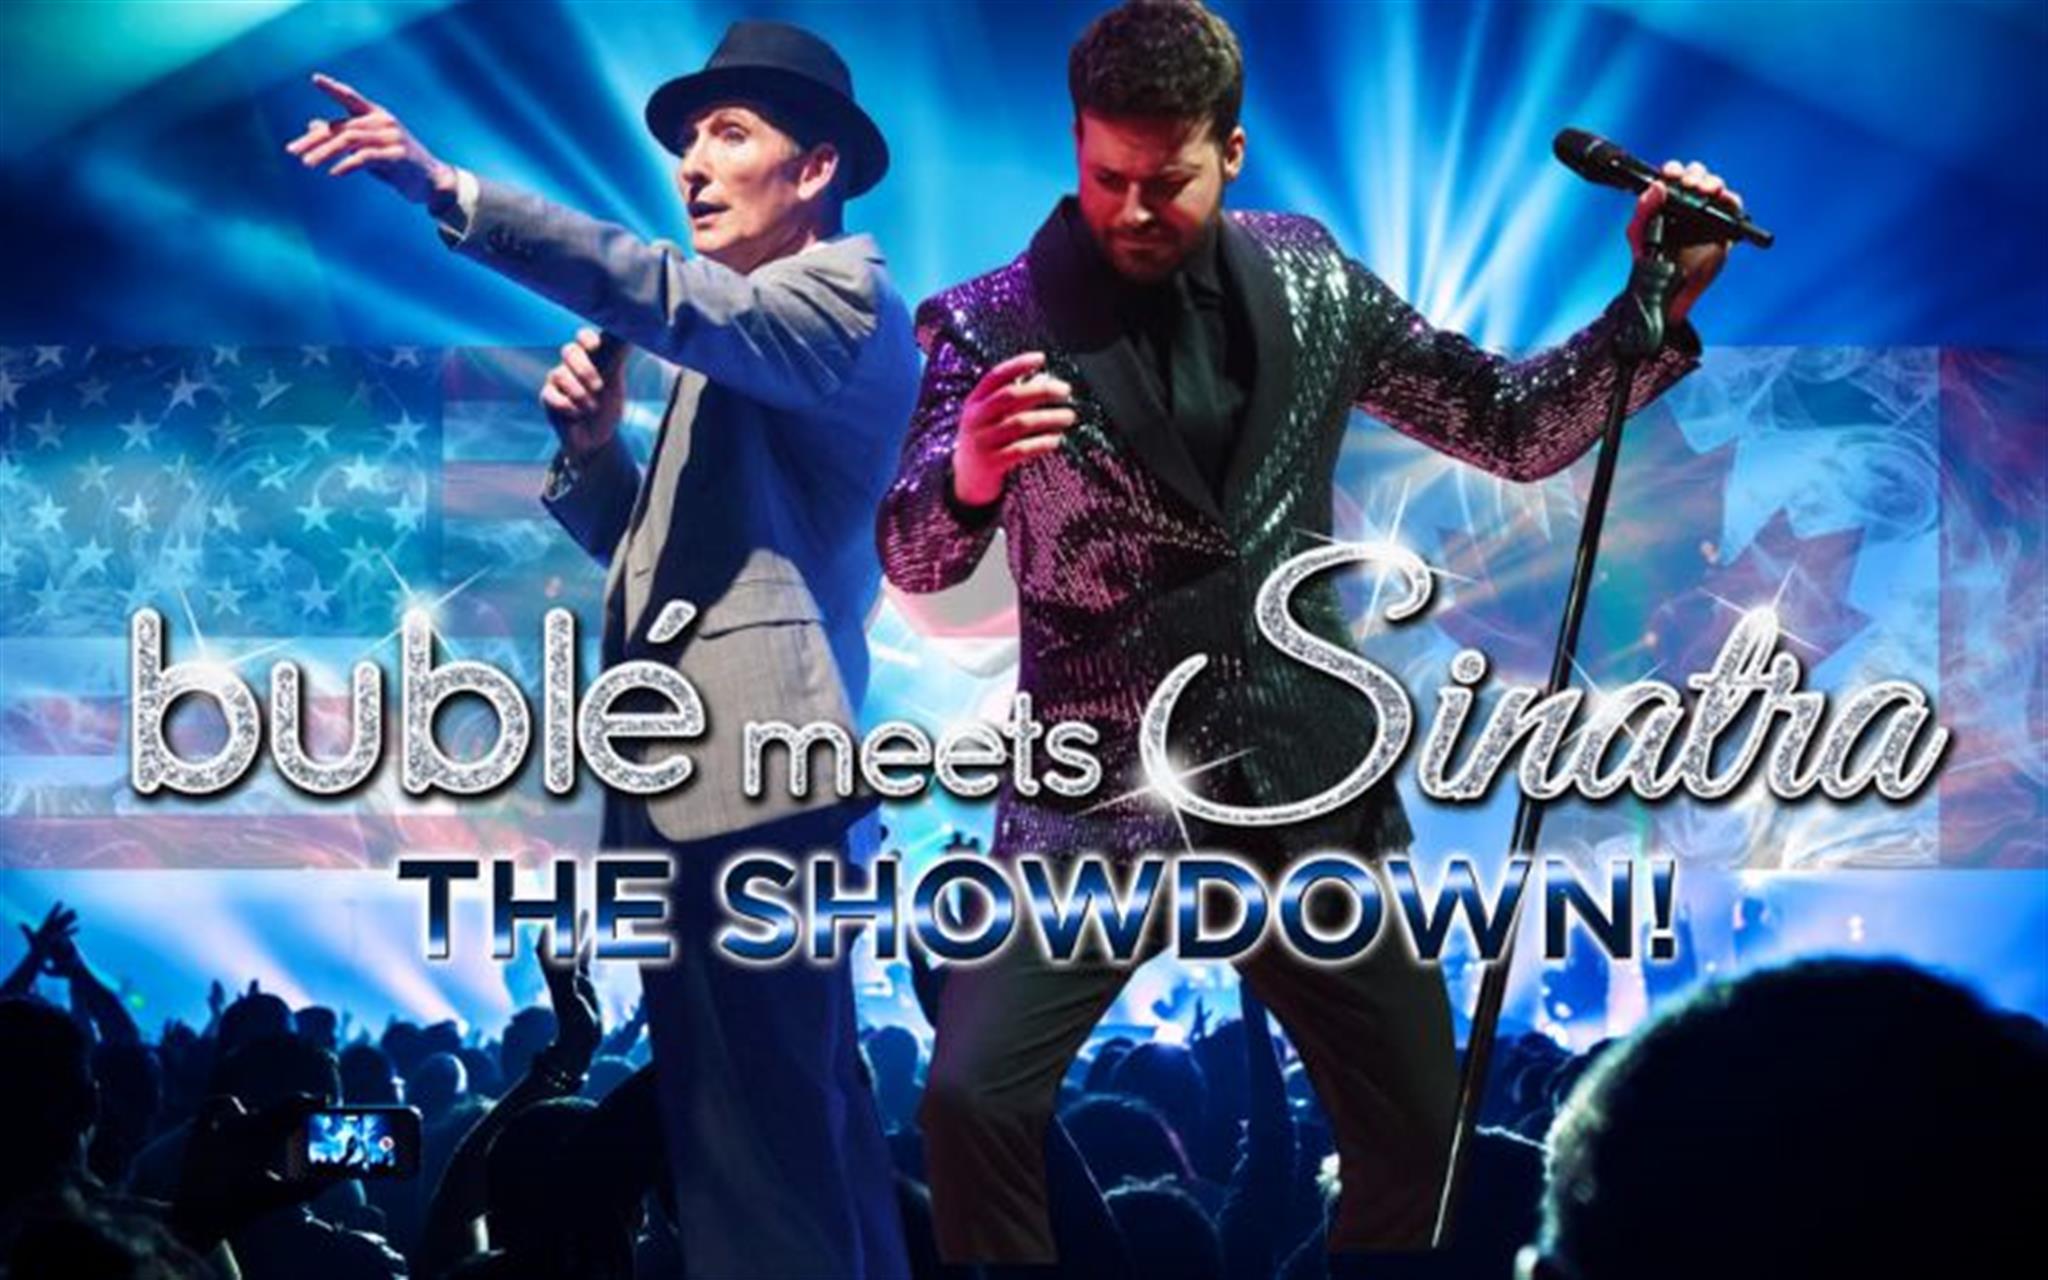 Bublé meets Sinatra: The Showdown! image